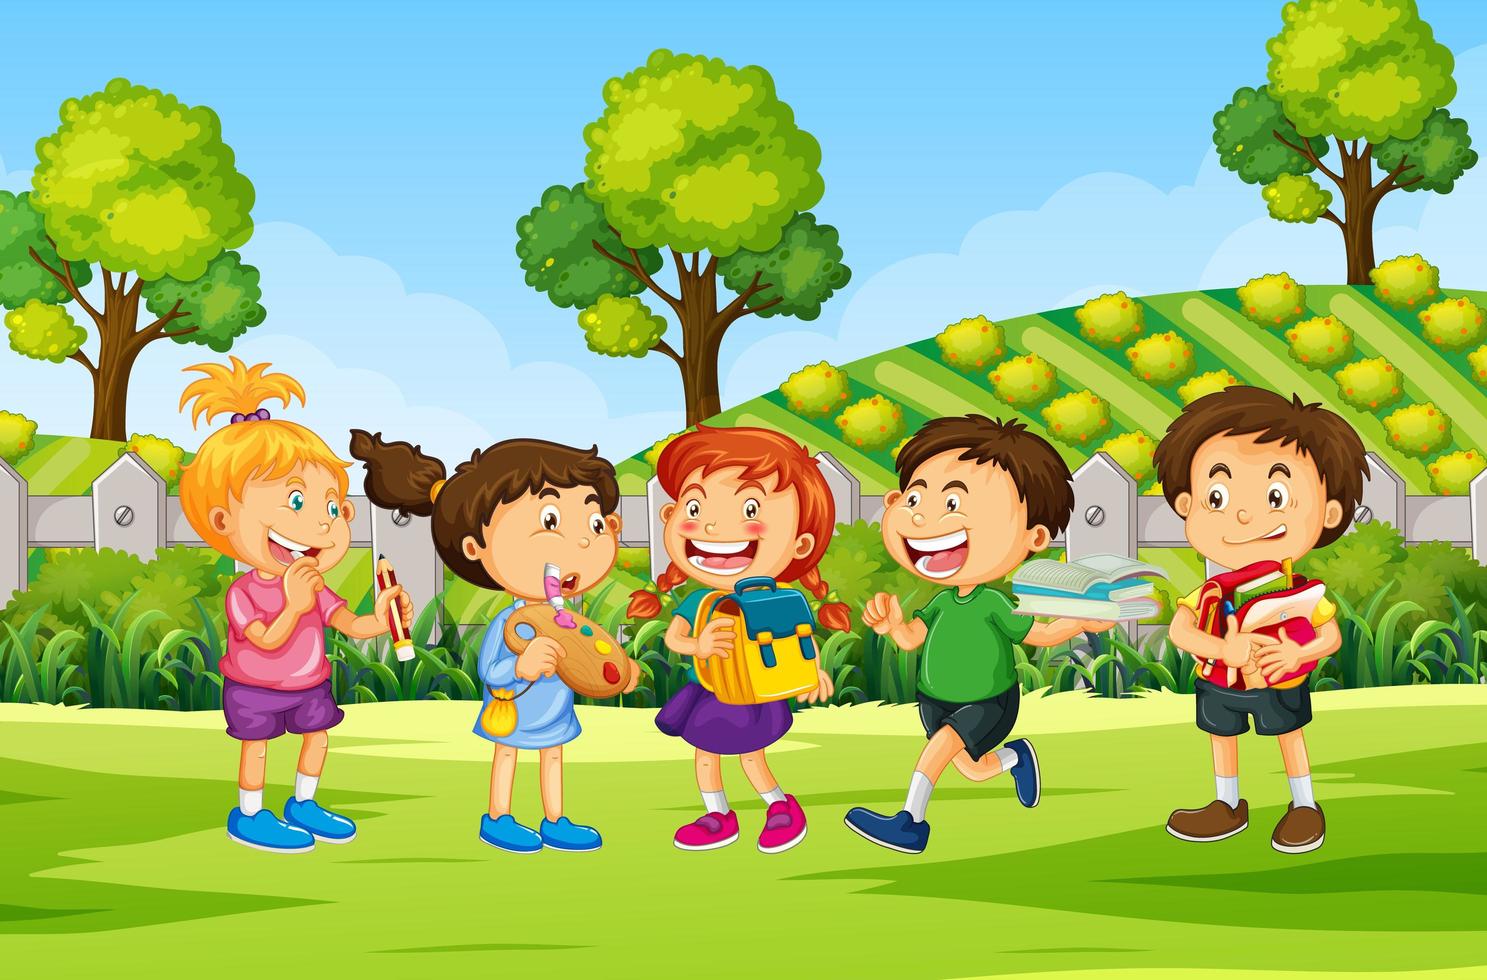 Children in outdoor nature scene vector